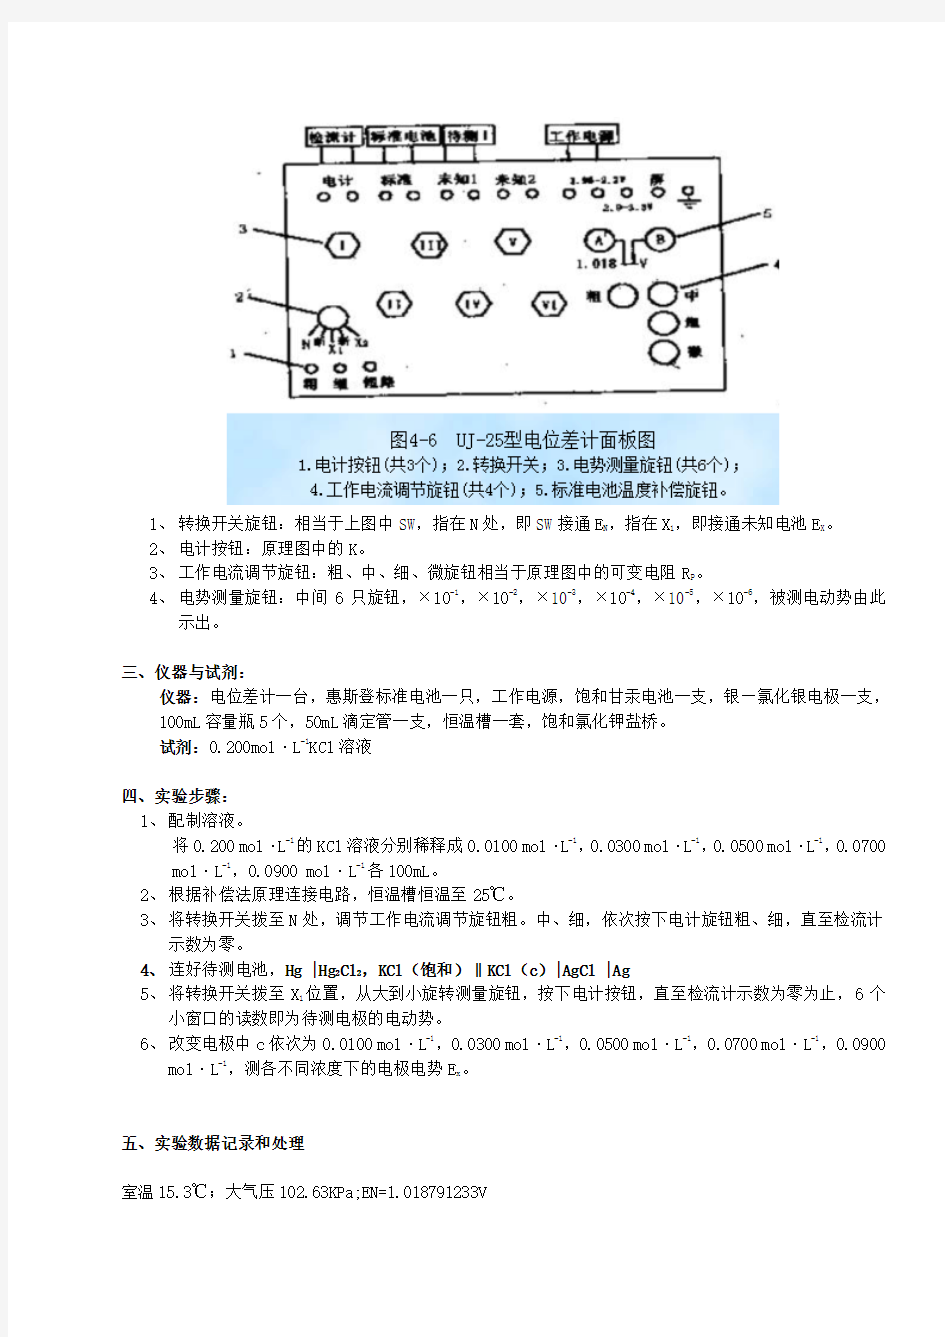 原电池电动势的测定实验报告_浙江大学 (1)